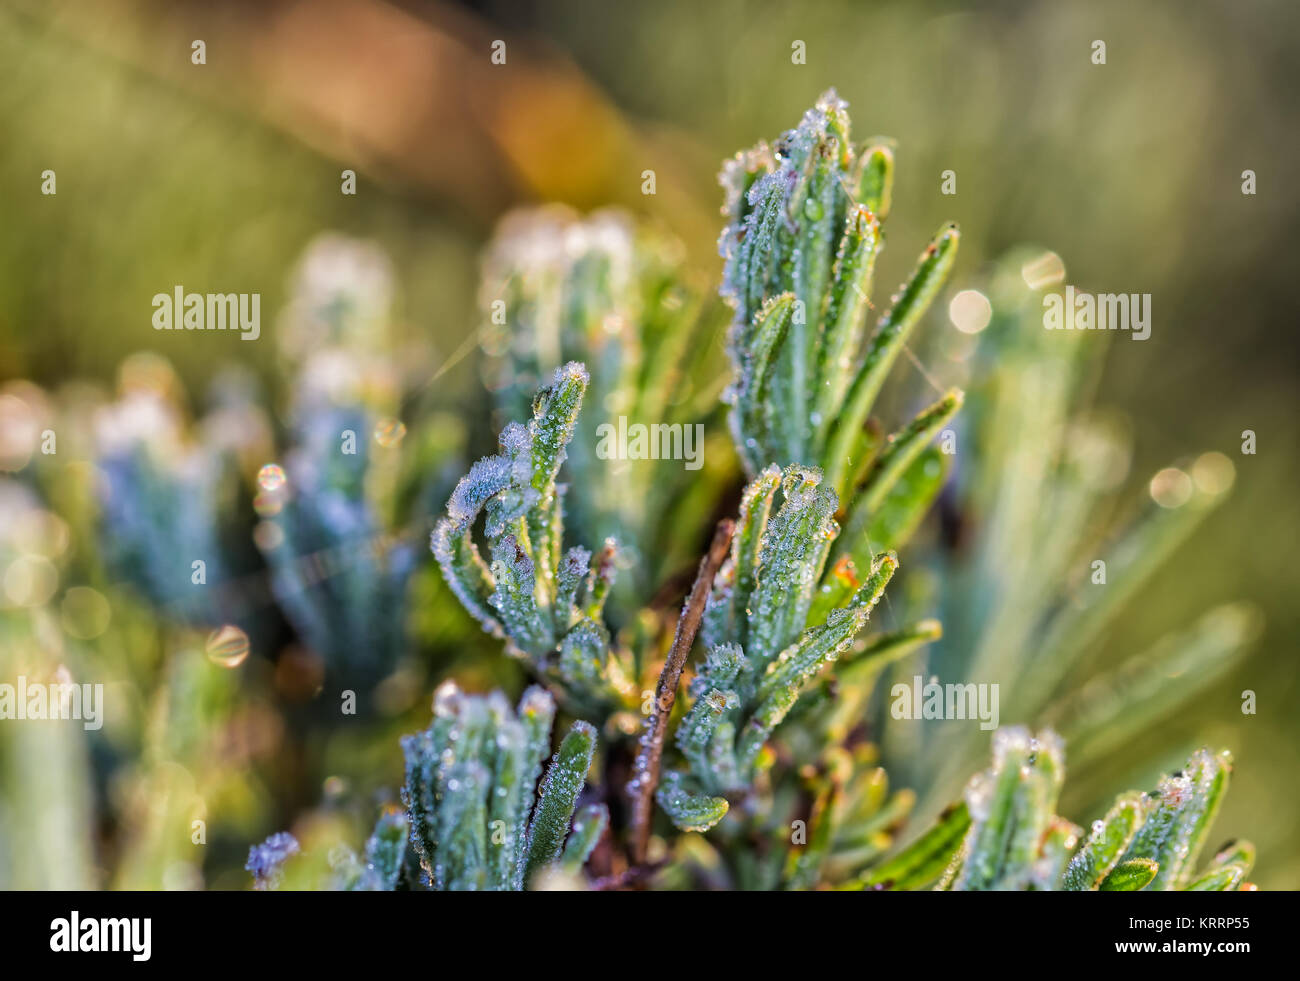 La glace naturelle photographié dans une plante sauvage après une nuit froide. Banque D'Images